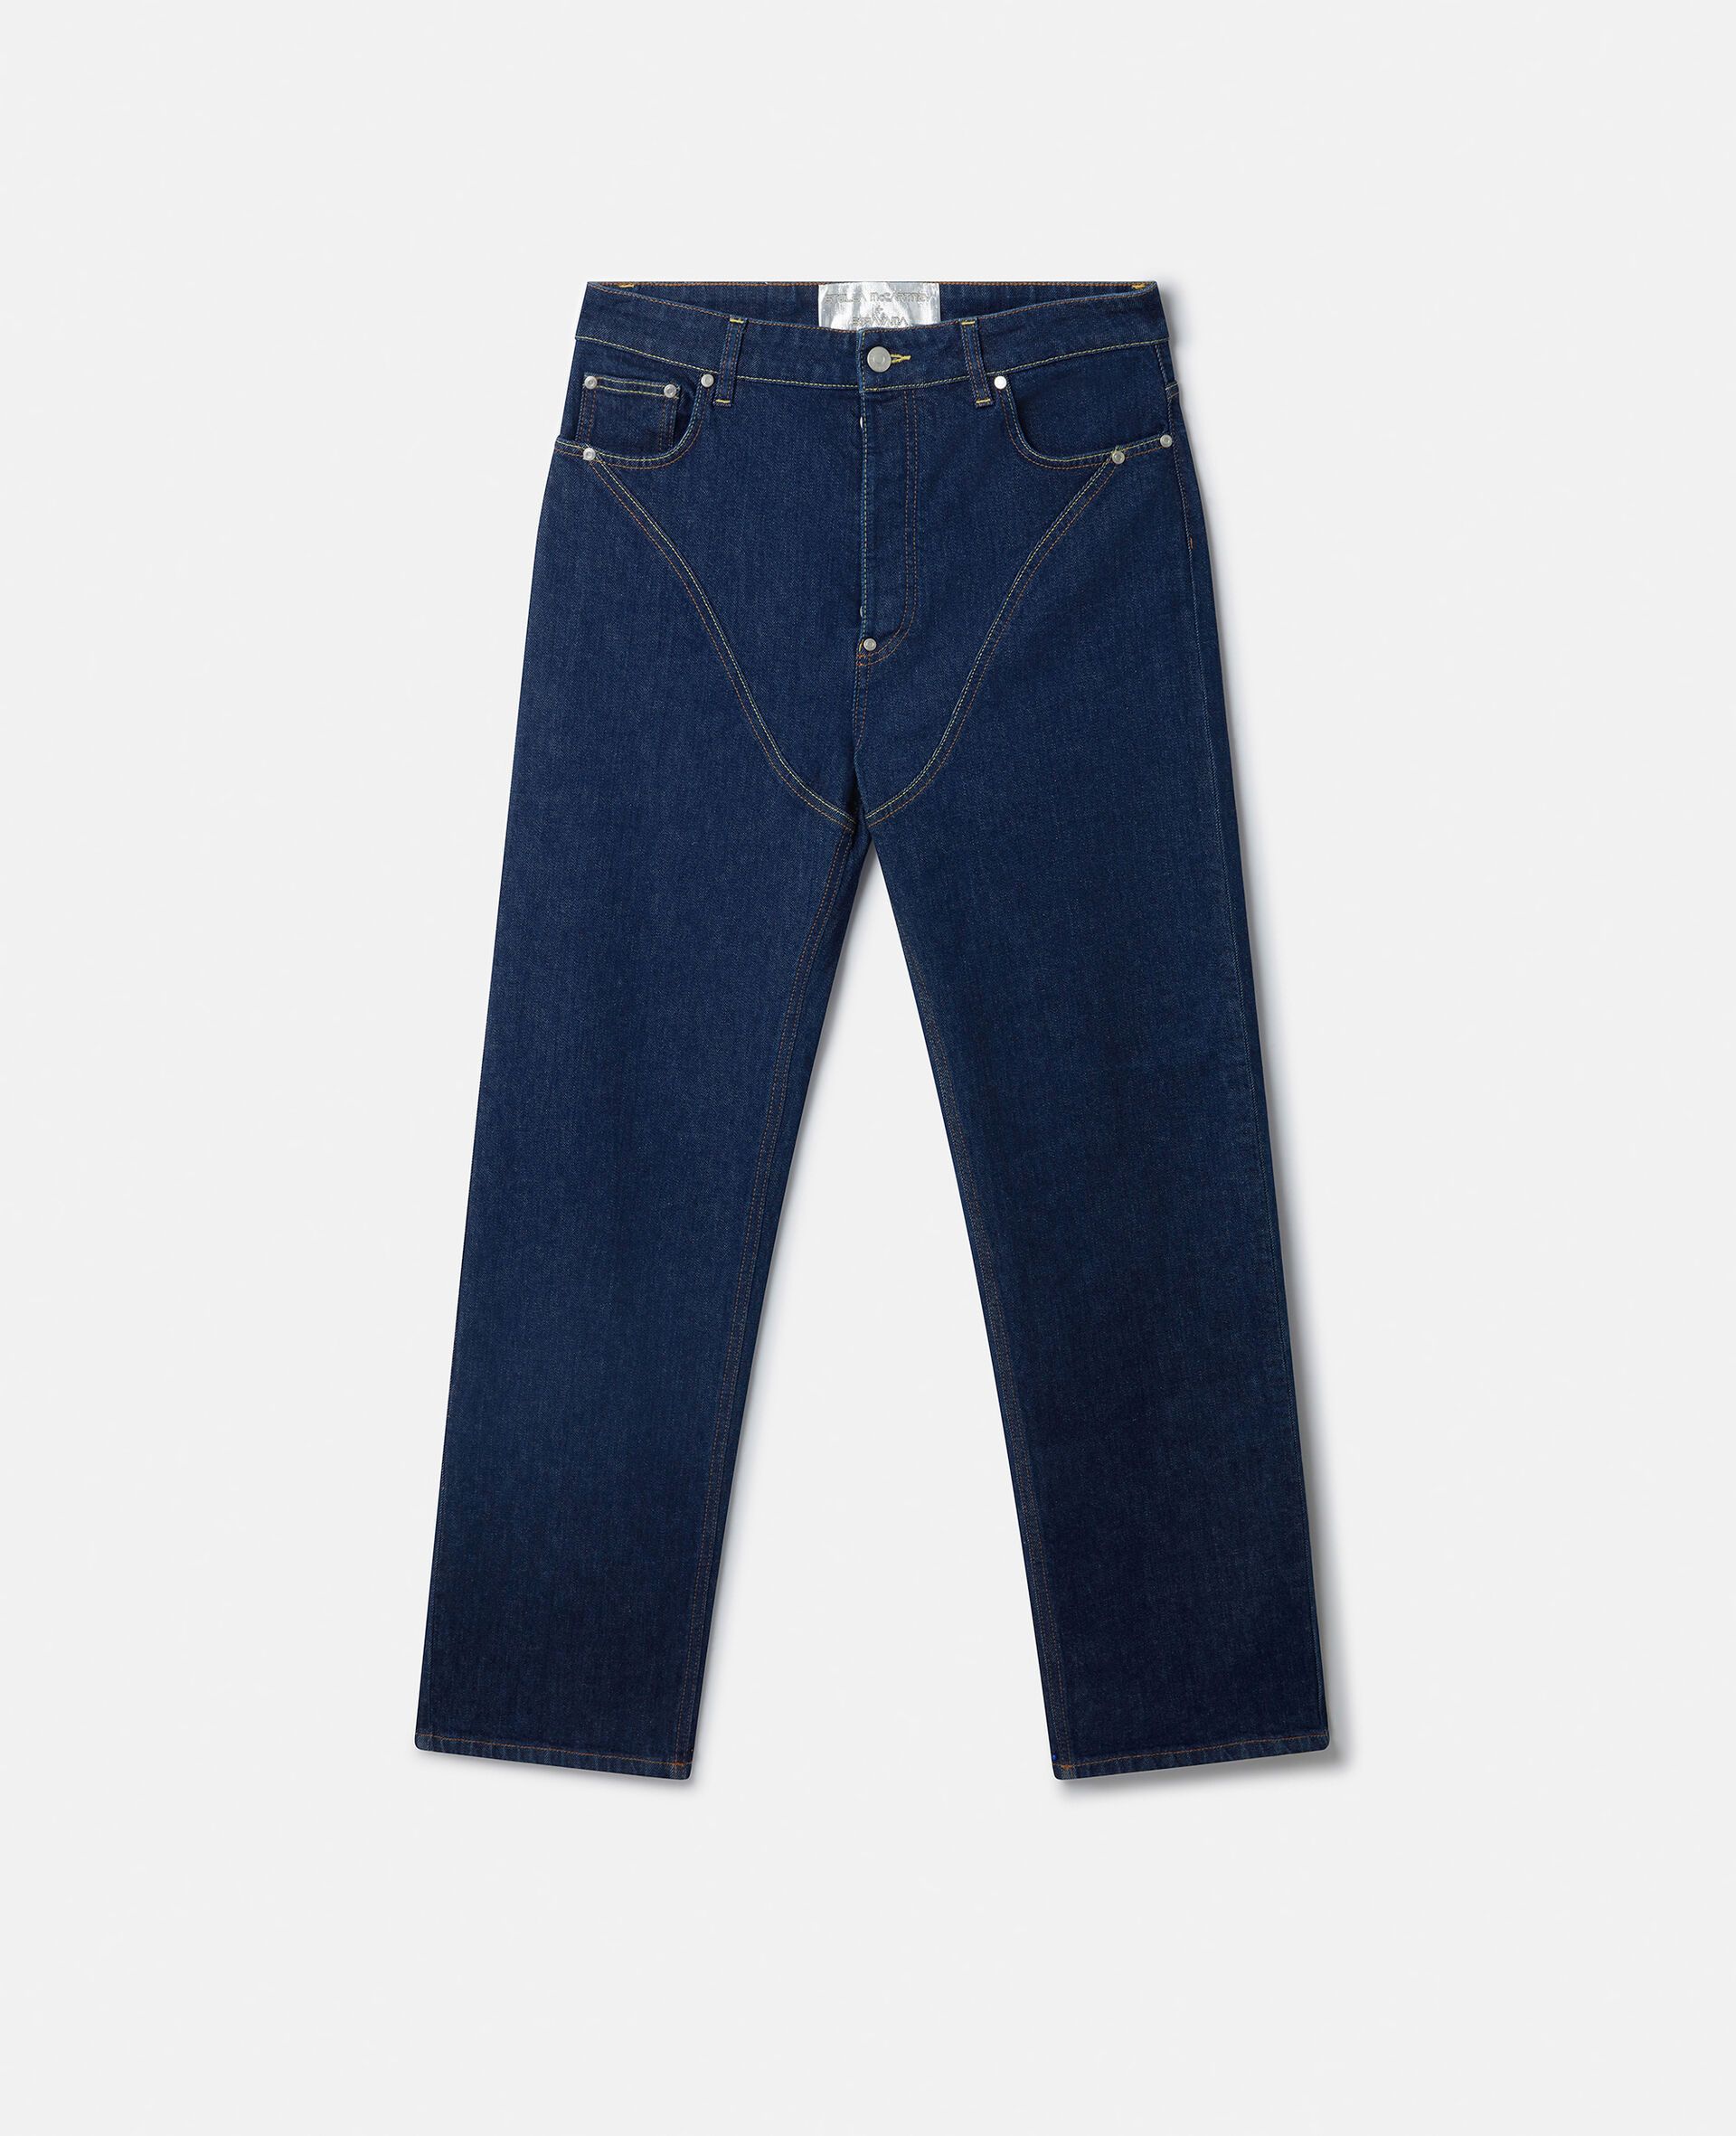 Platinum Dream Jeans mit mittelhohem Bund, geradem Hosenbein und Stickerei-Blau-medium